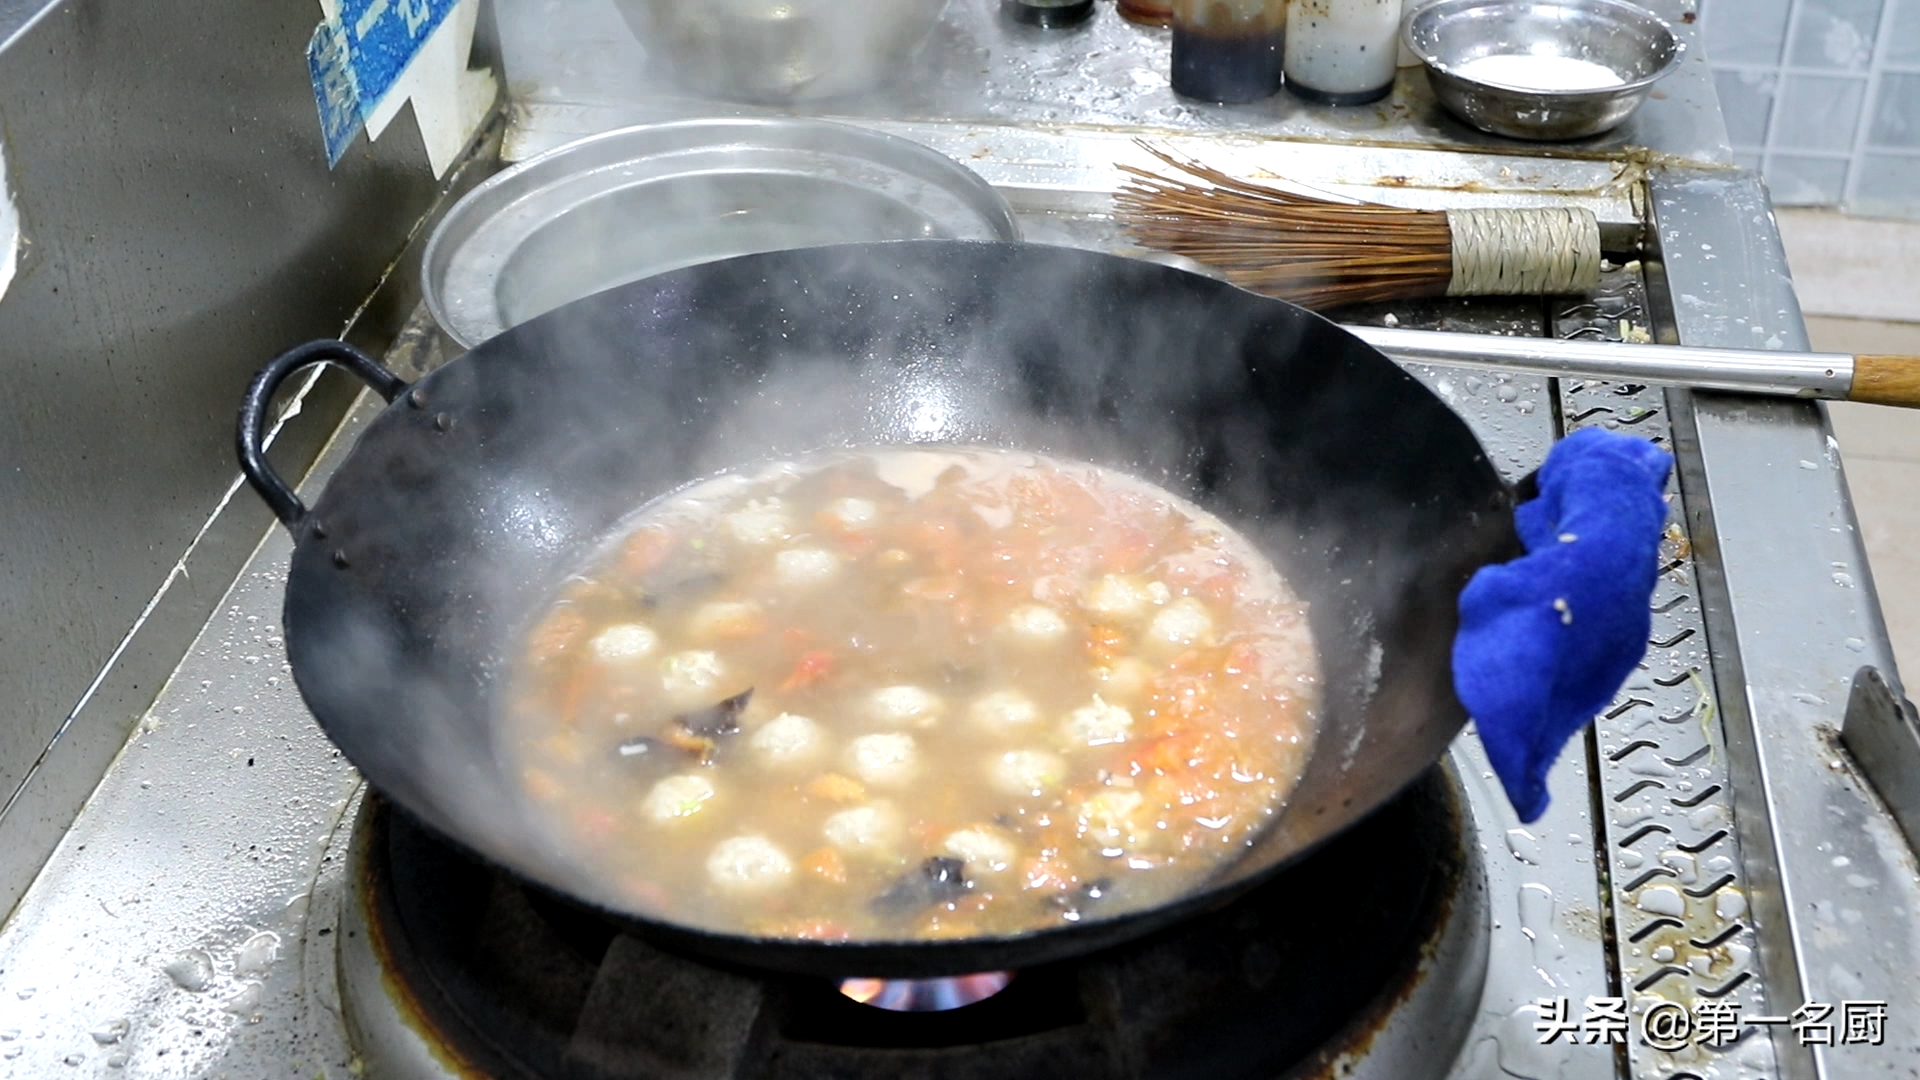 丸子汤的家常做法「丸子汤的家常做法」